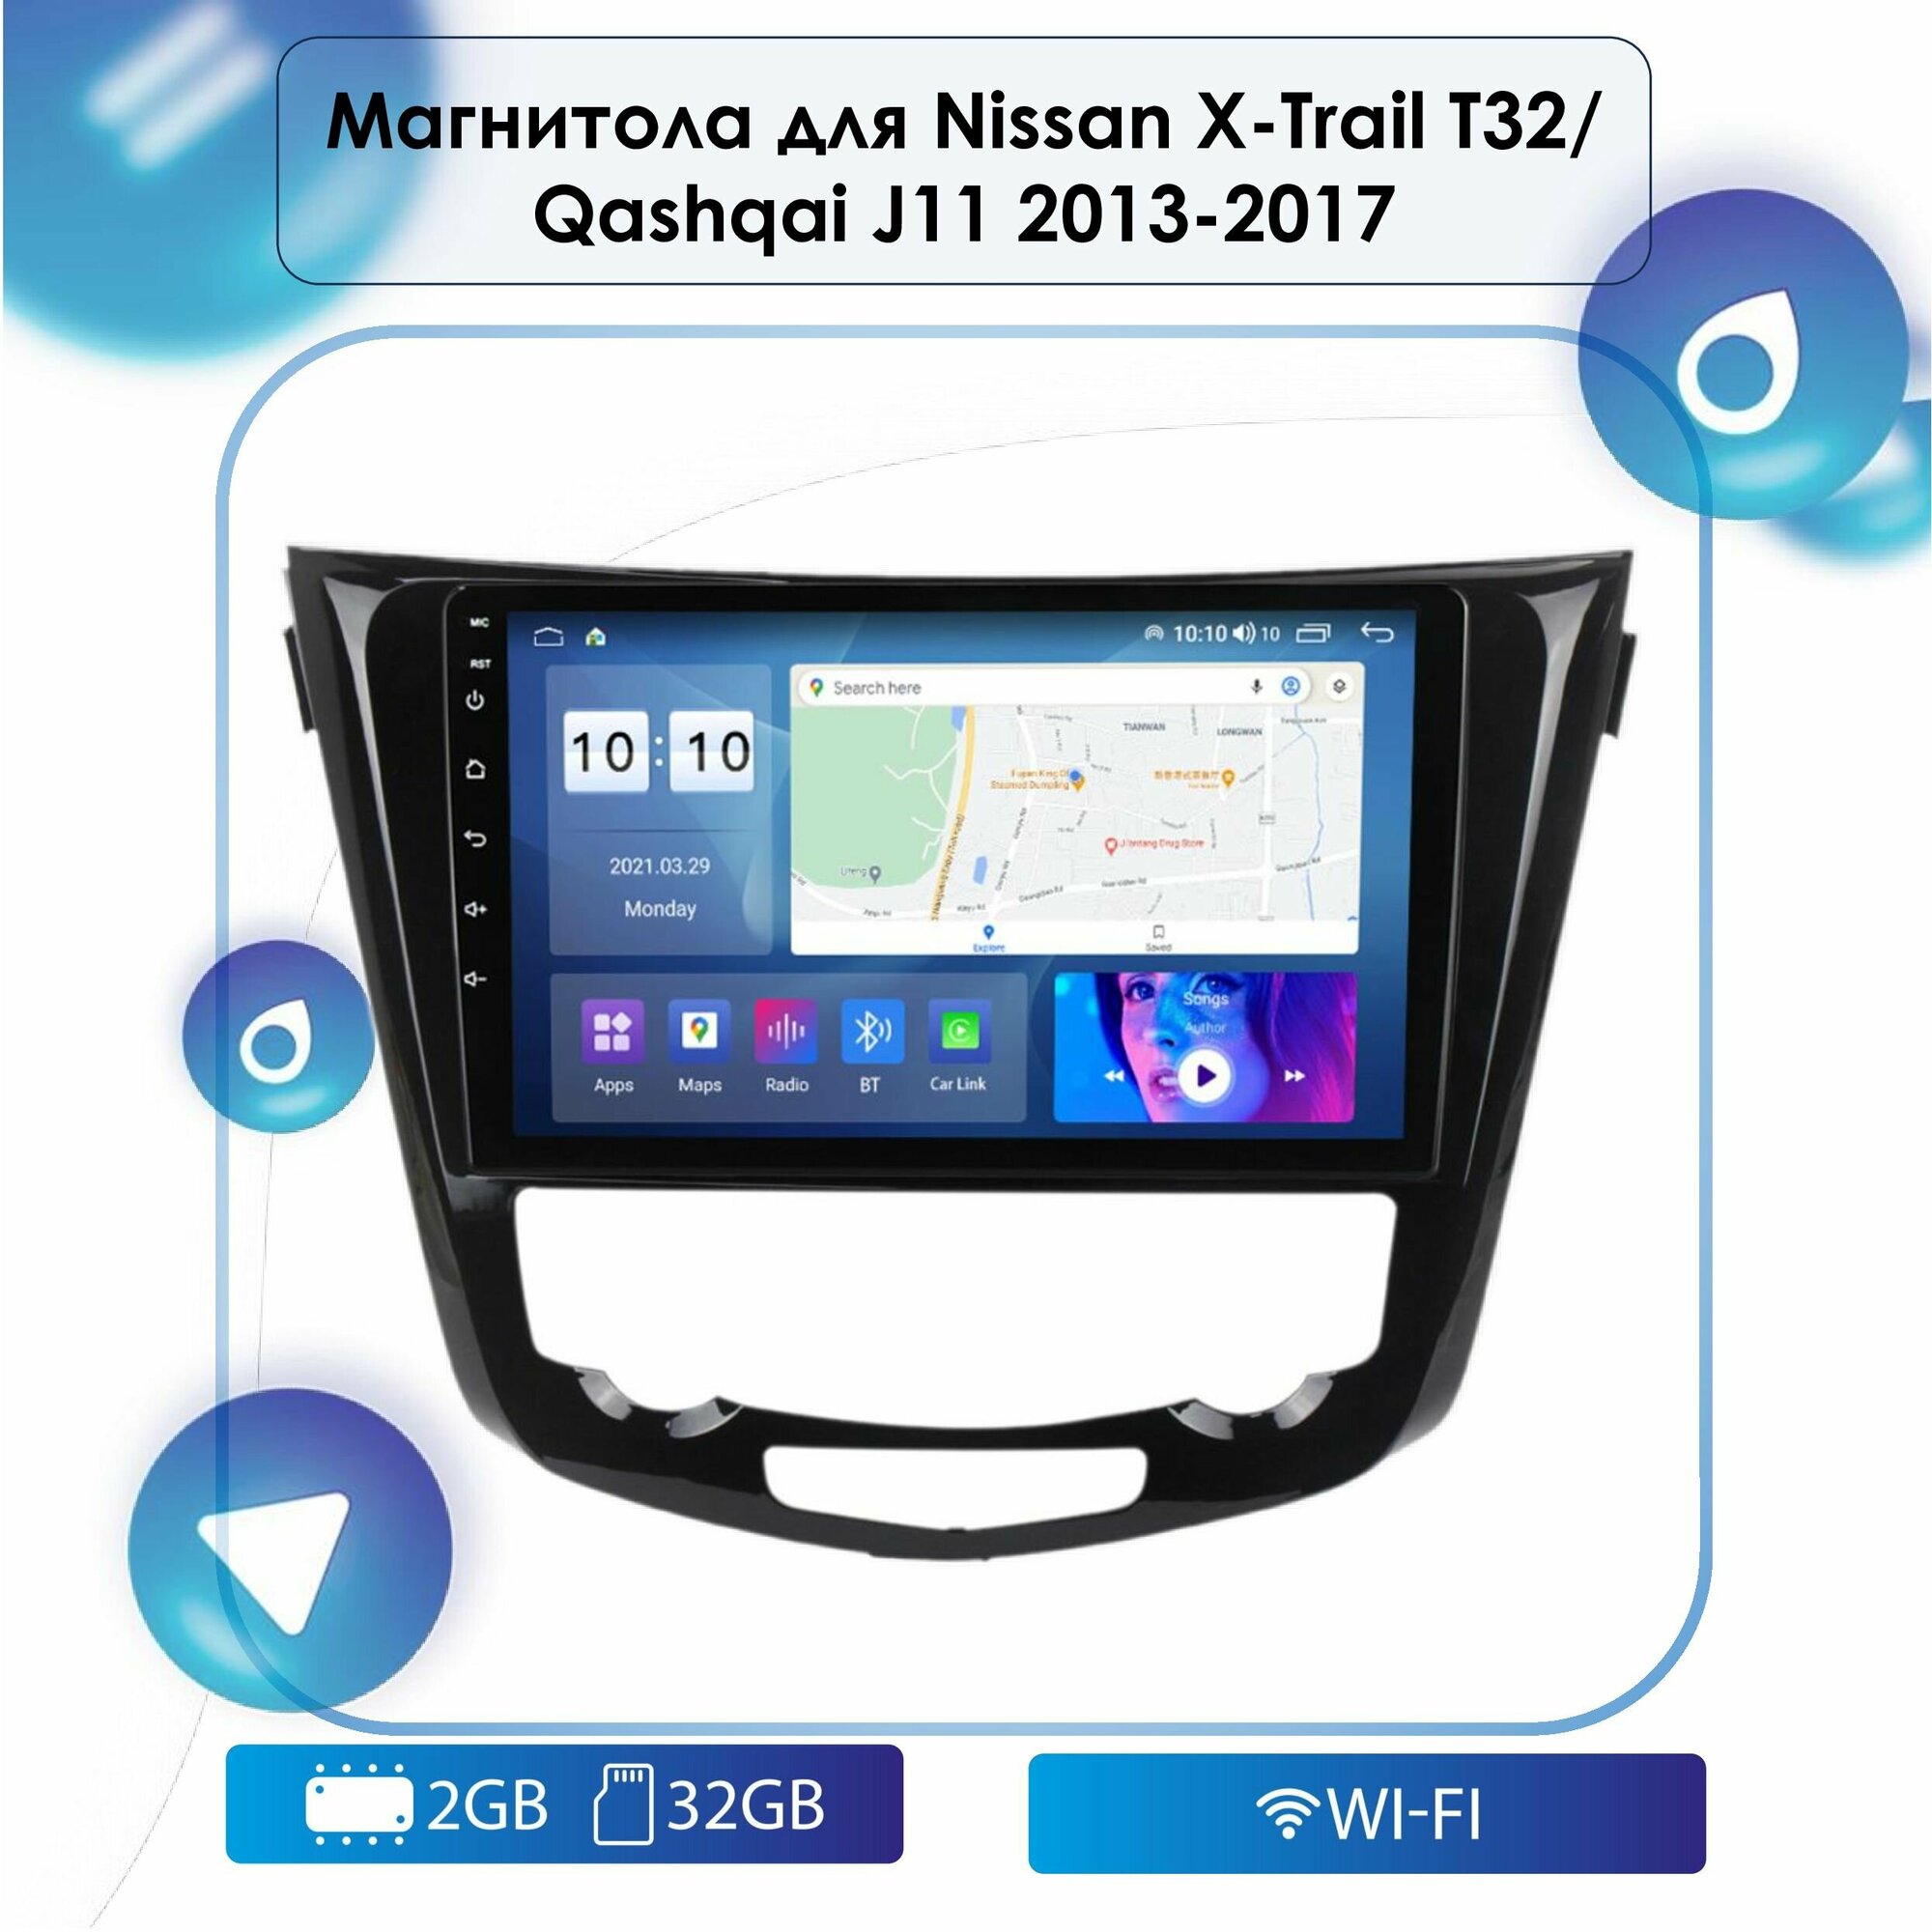 Автомагнитола для Nissan X-Trail T32/ Qashqai J11 2013-2017 (без кругового обзора) Android, 2-32 Wi-Fi, Bluetooth, GPS, Эквалайзер, Мульти-руль